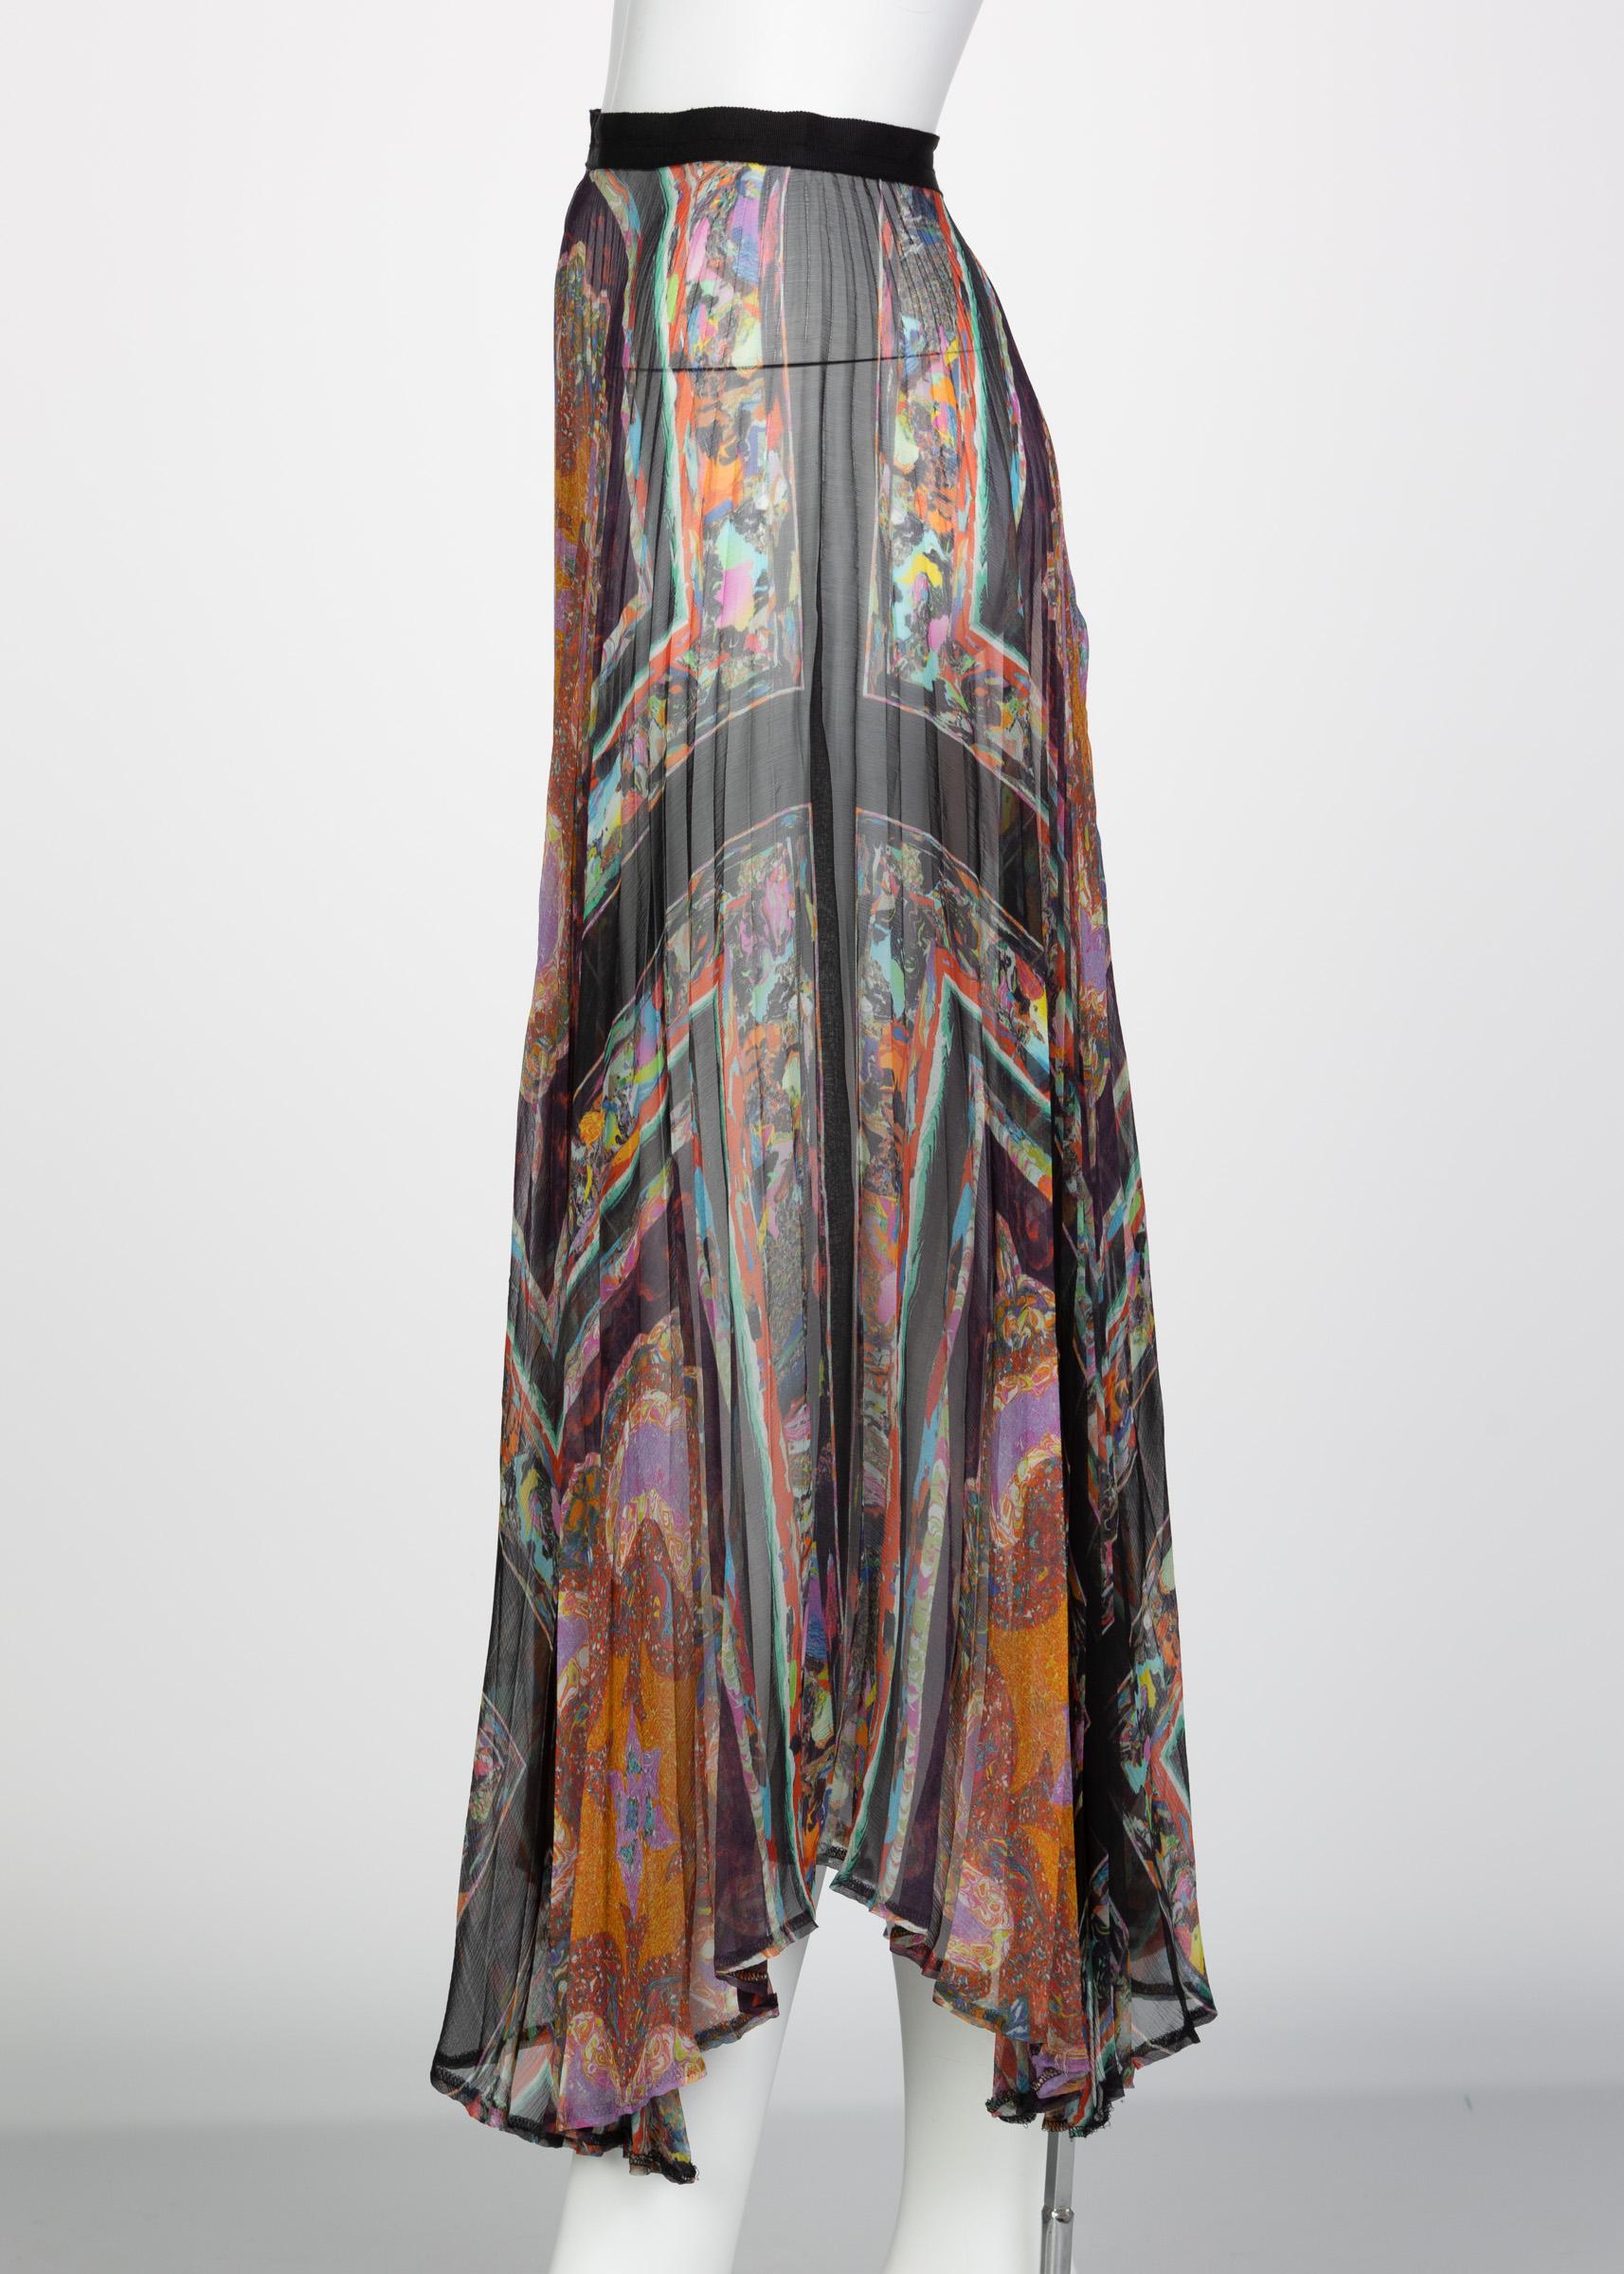 Gray Dries Van Noten Sheer Silk Printed Pleated Skirt, Runway 2008 For Sale